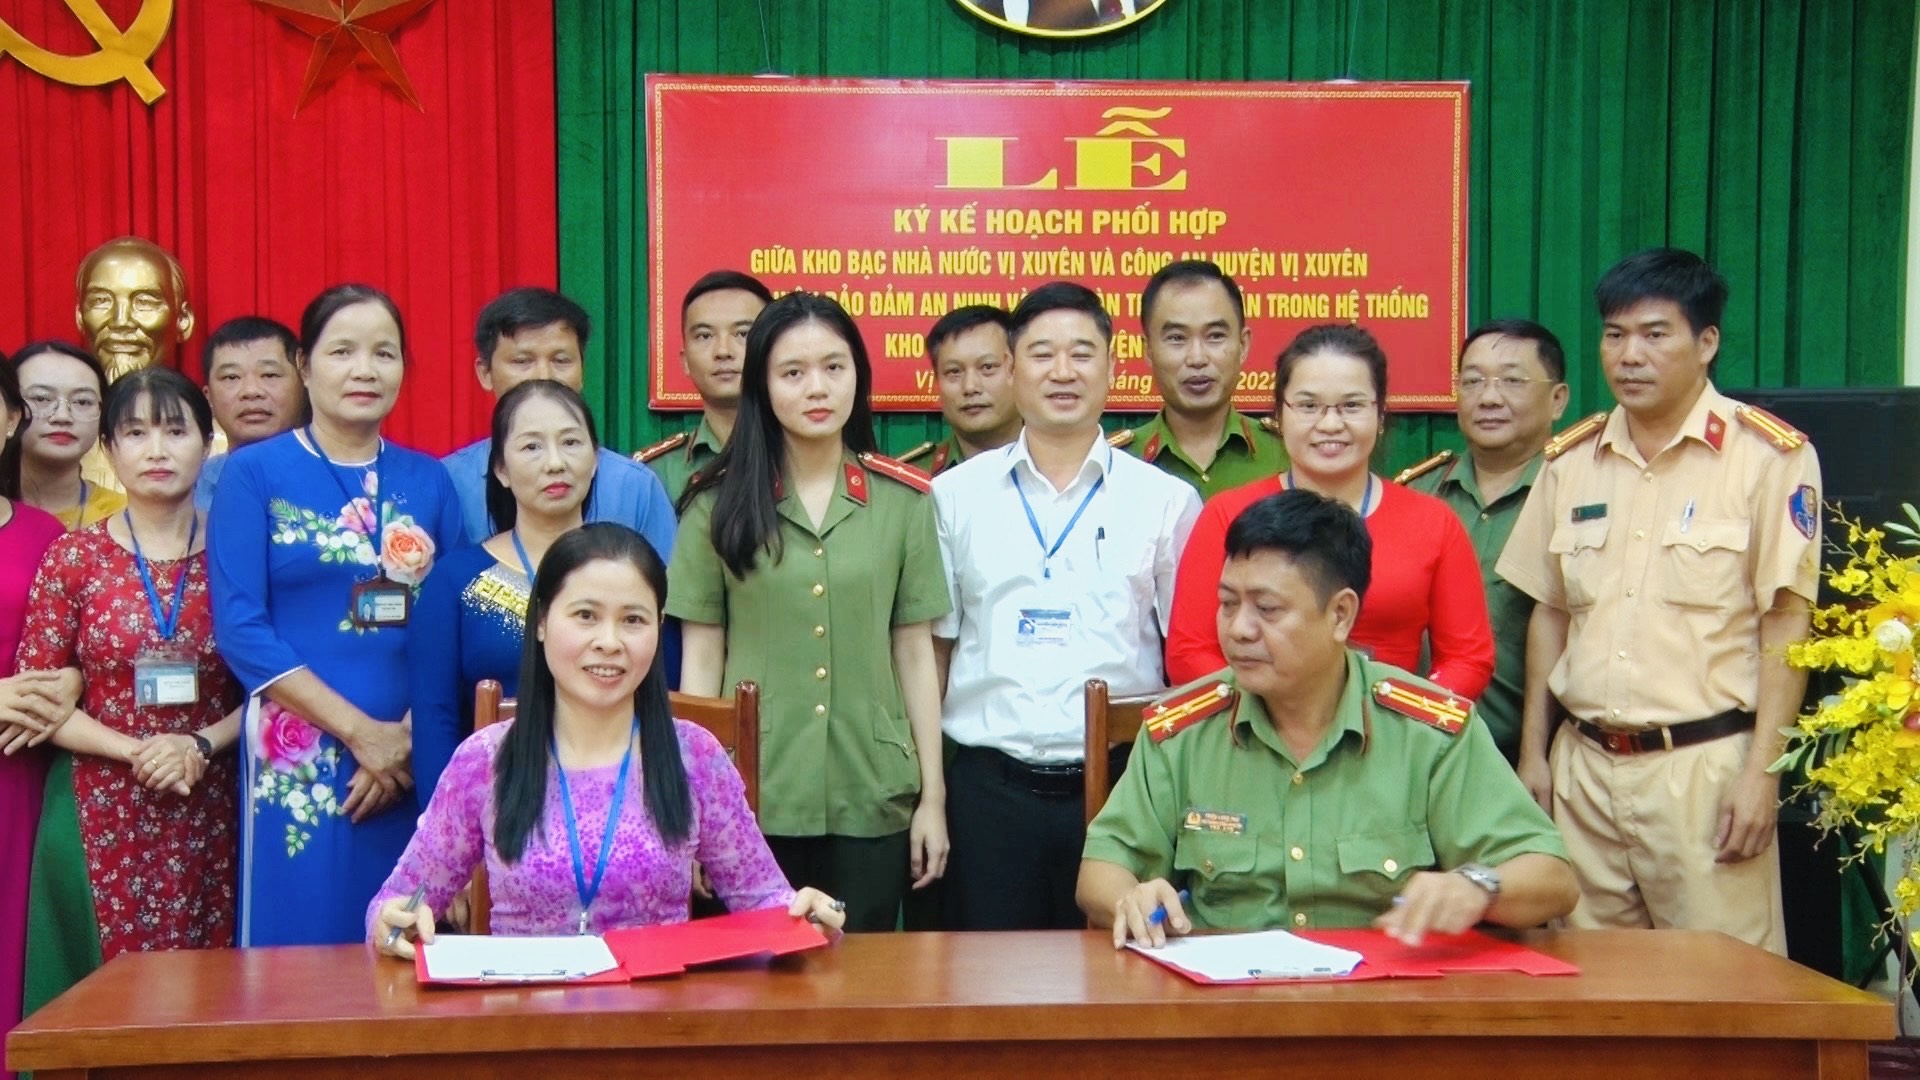 Lễ ký kết phối hợp giữa Kho bạc Nhà nước Vị Xuyên và Công an huyện Vị Xuyên